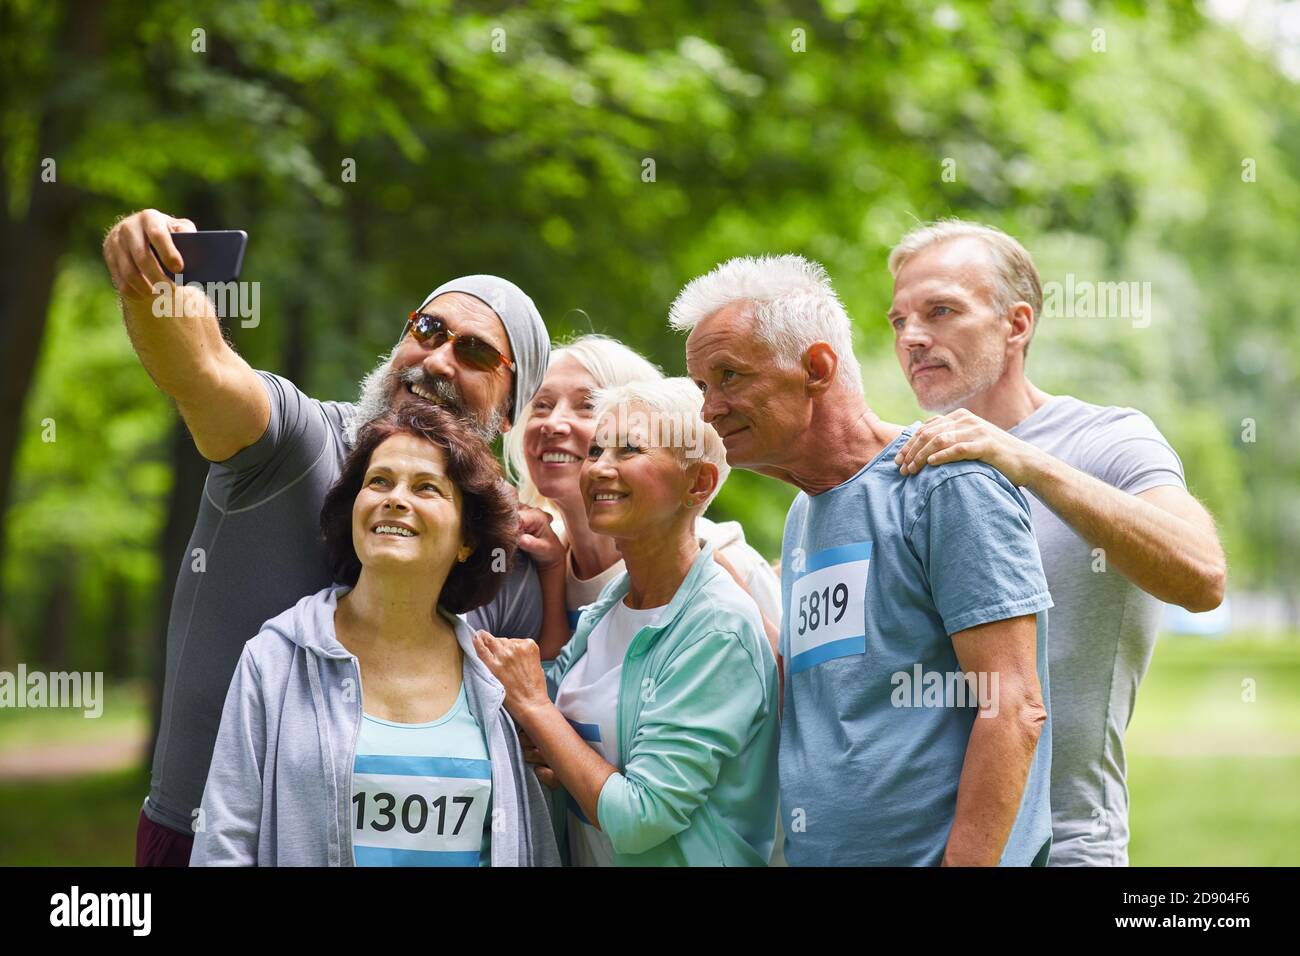 Gruppe von glücklichen älteren Freunden, die am Sommermarathon teilnehmen Rennen stehen zusammen im Waldpark machen Gruppe Selfie Foto Stockfoto